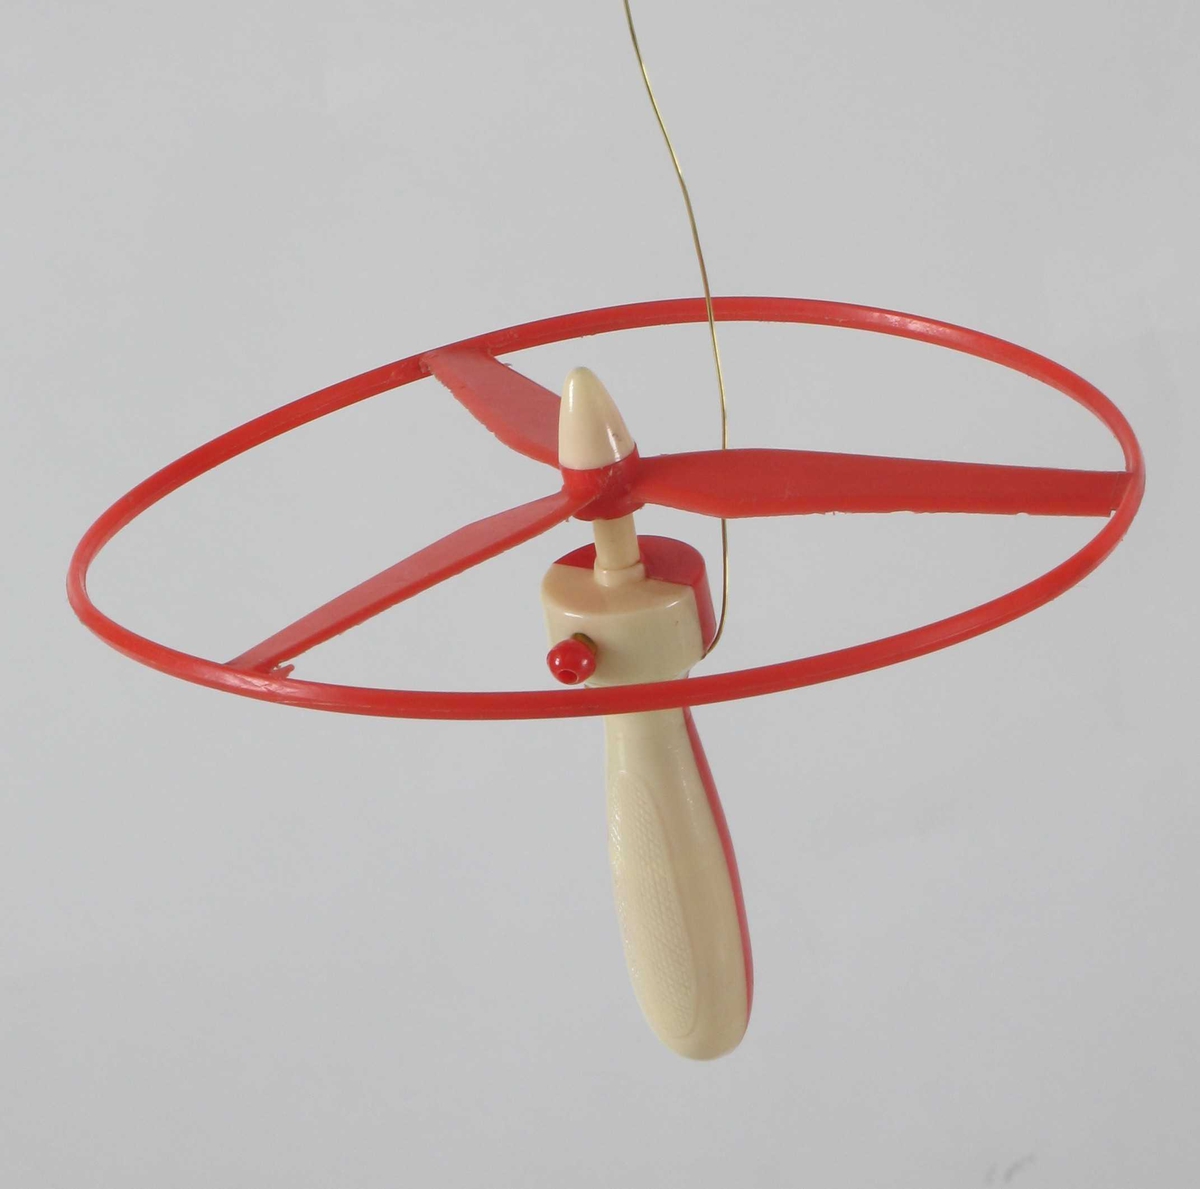 Propell i tynn plastsirkel. I midten et hull, settes på håndtaket som har en snelle med kule i enden til å trekke opp propellen med.  Rød propell, rødt og beige håndtak.